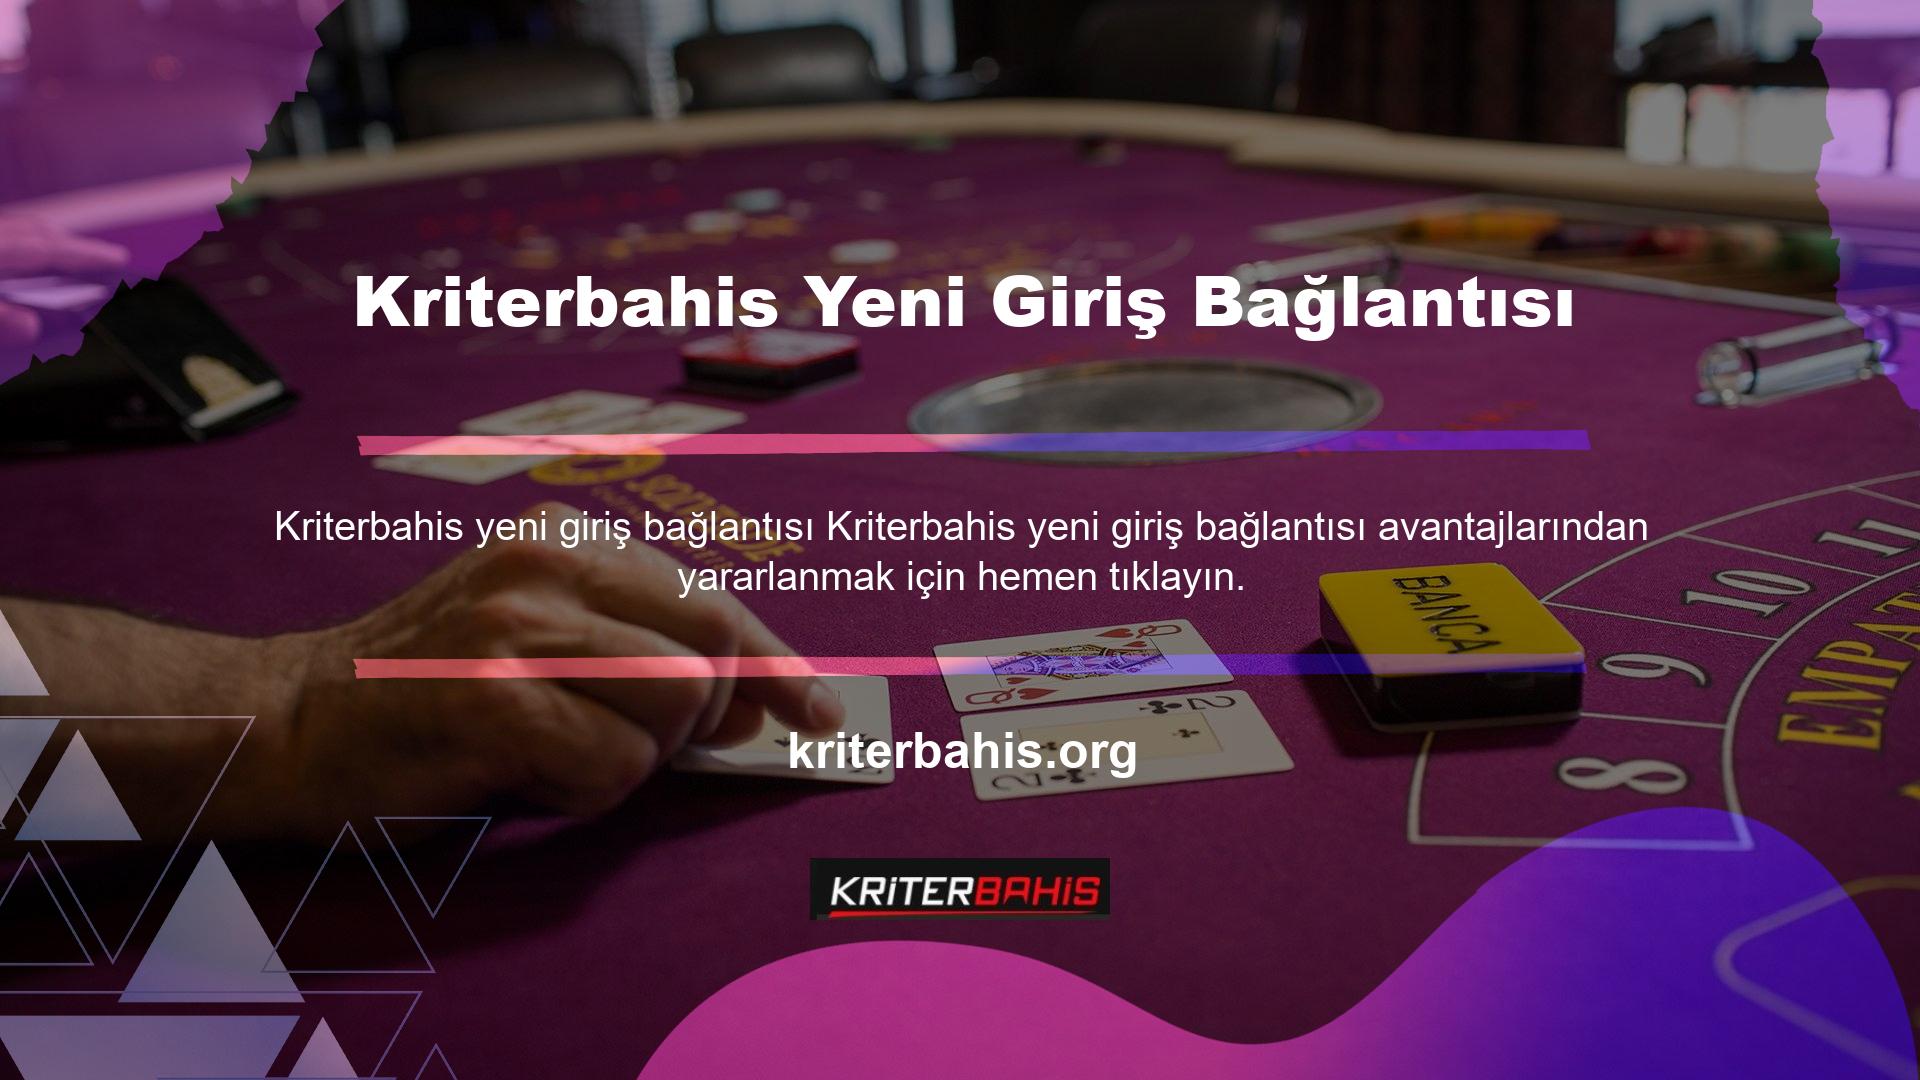 Kriterbahis, Türk casino pazarının yeni yüzlerinden biridir ve kullanıcıların takdirini hak eden çok sayıda bonusa sahiptir